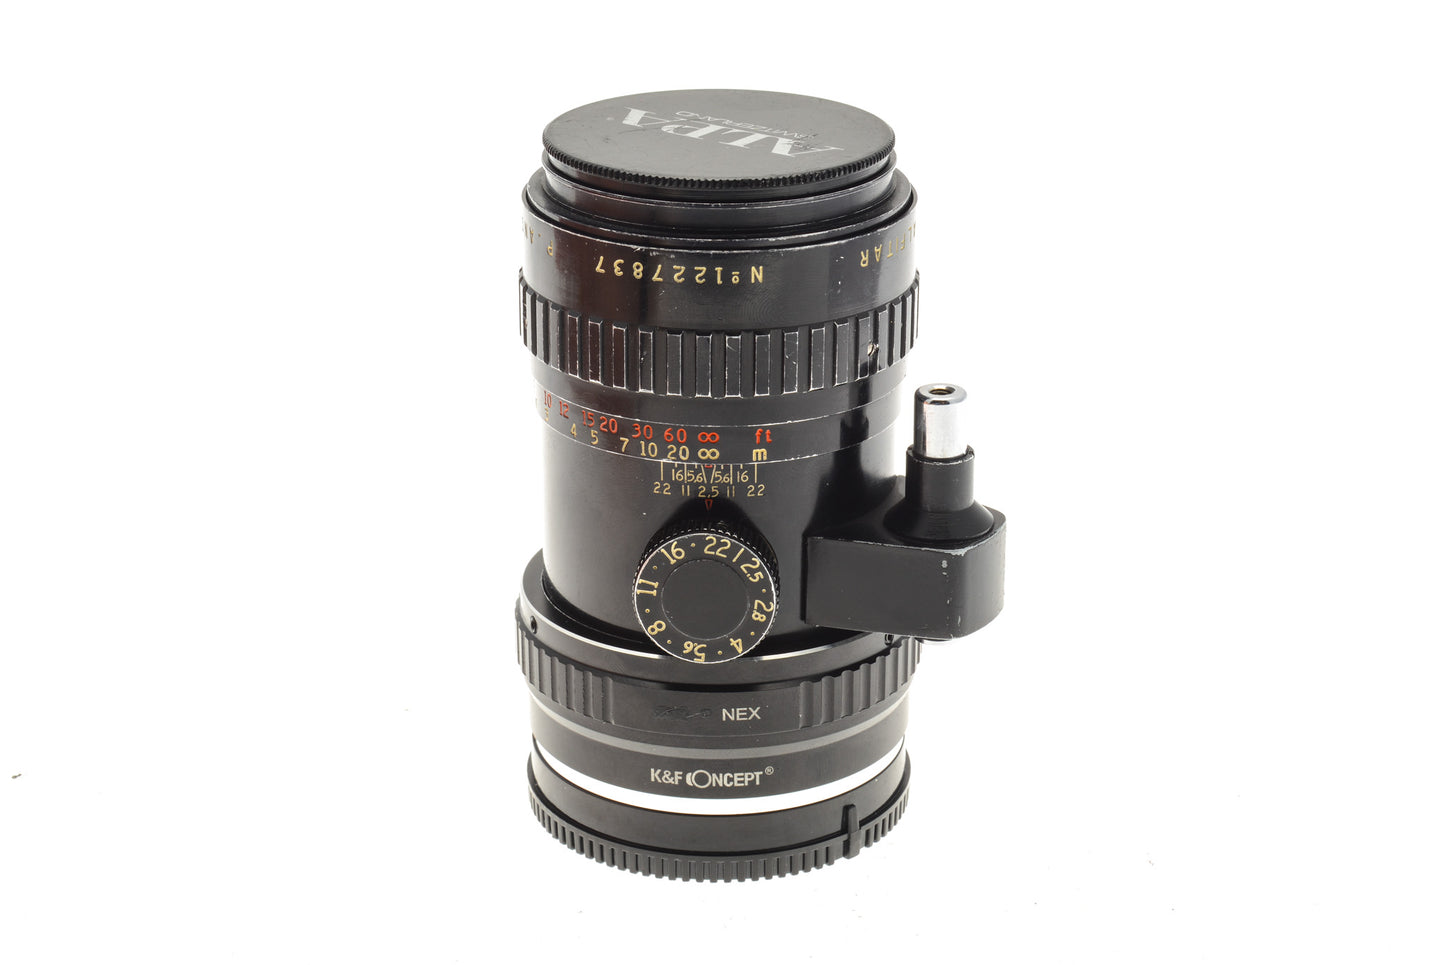 Angenieux 90mm f2.5 Alfitar - Lens